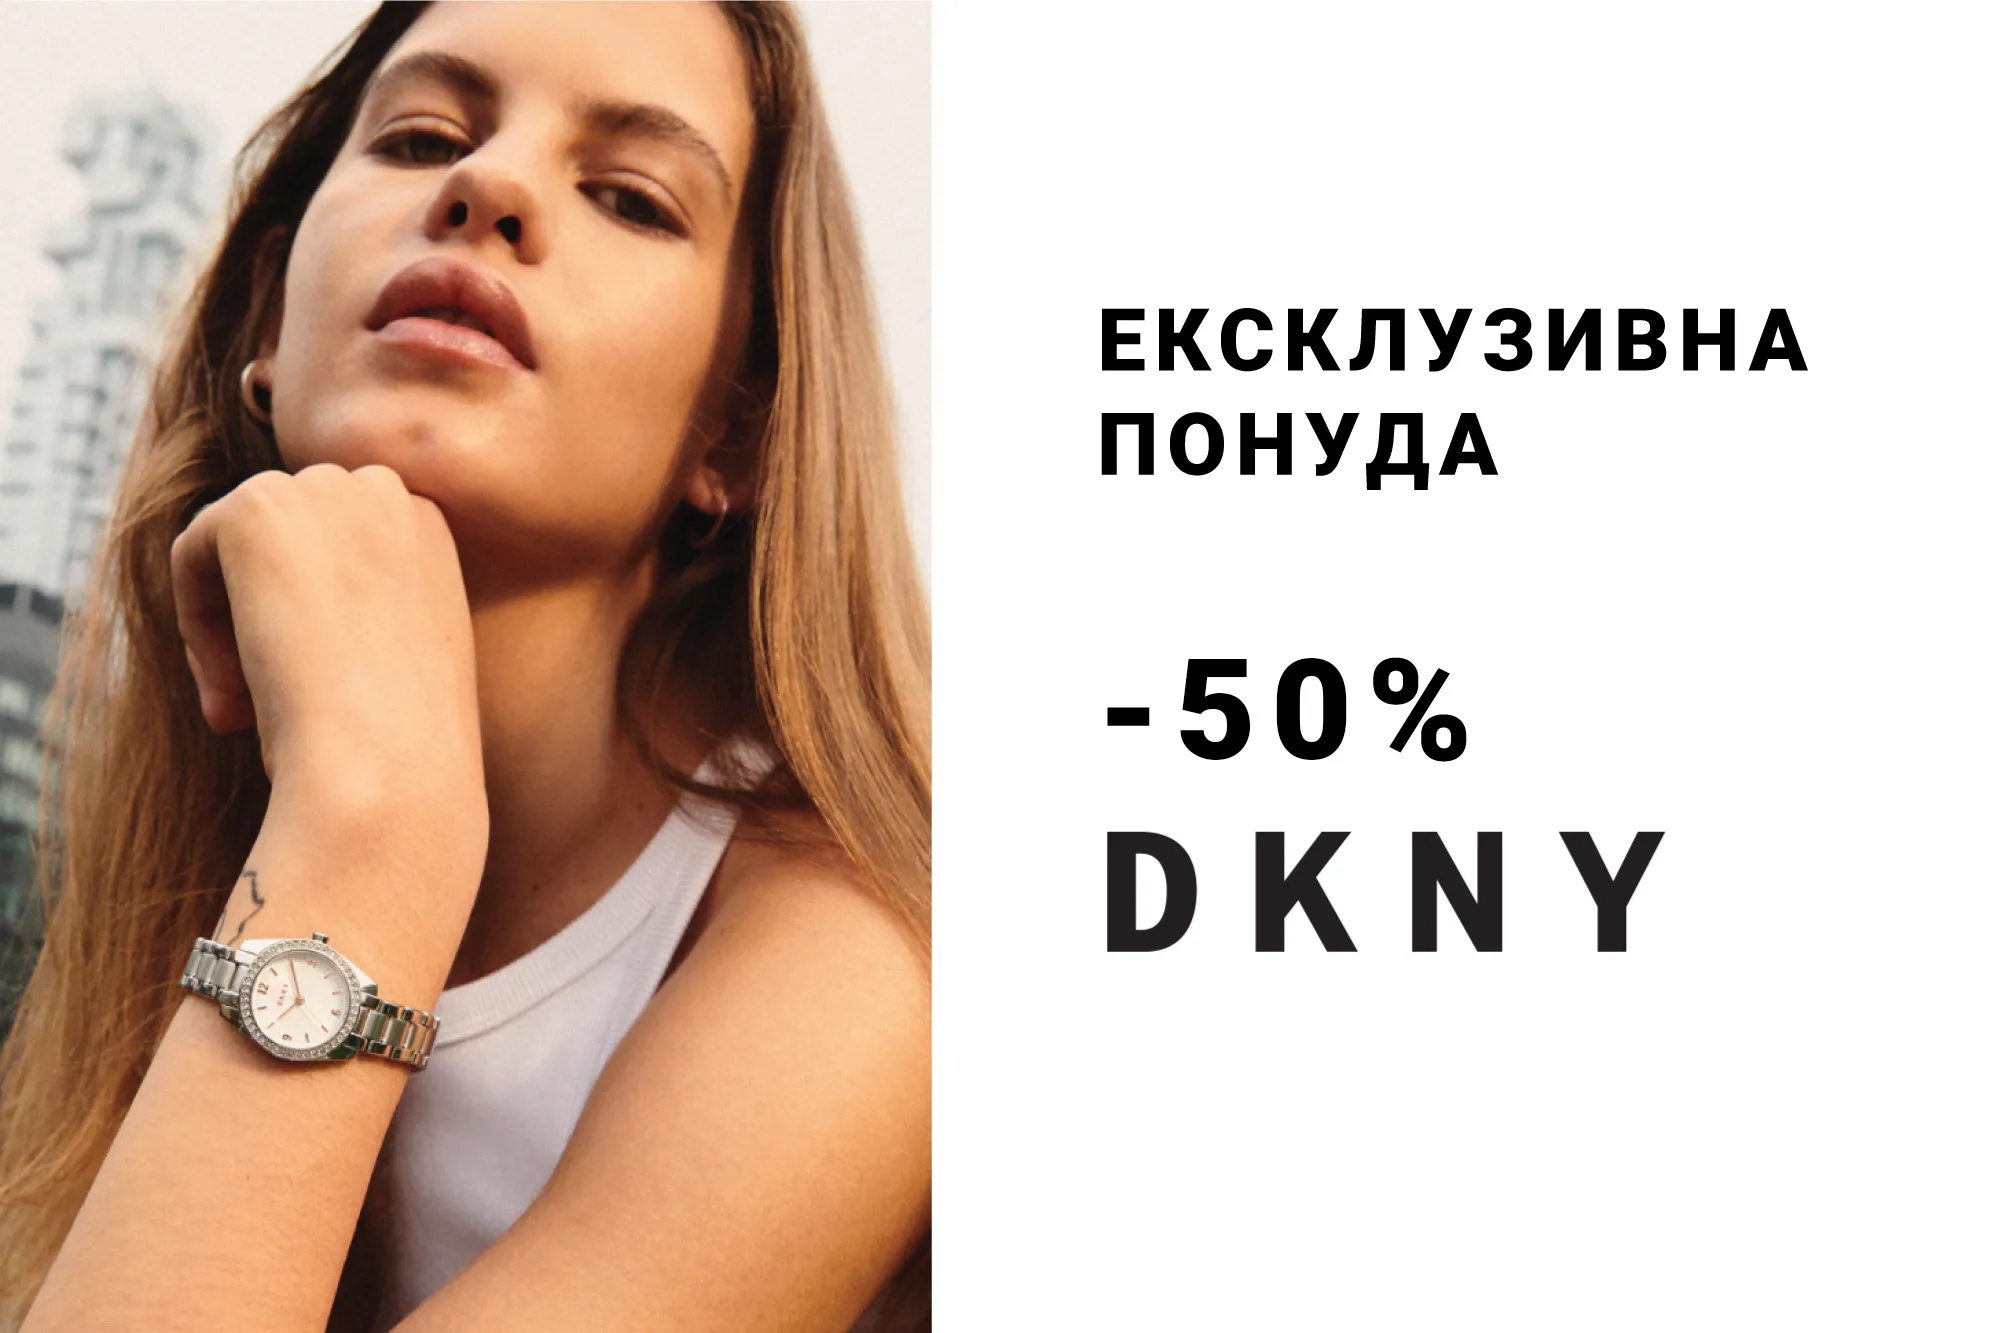 DKNY -50%